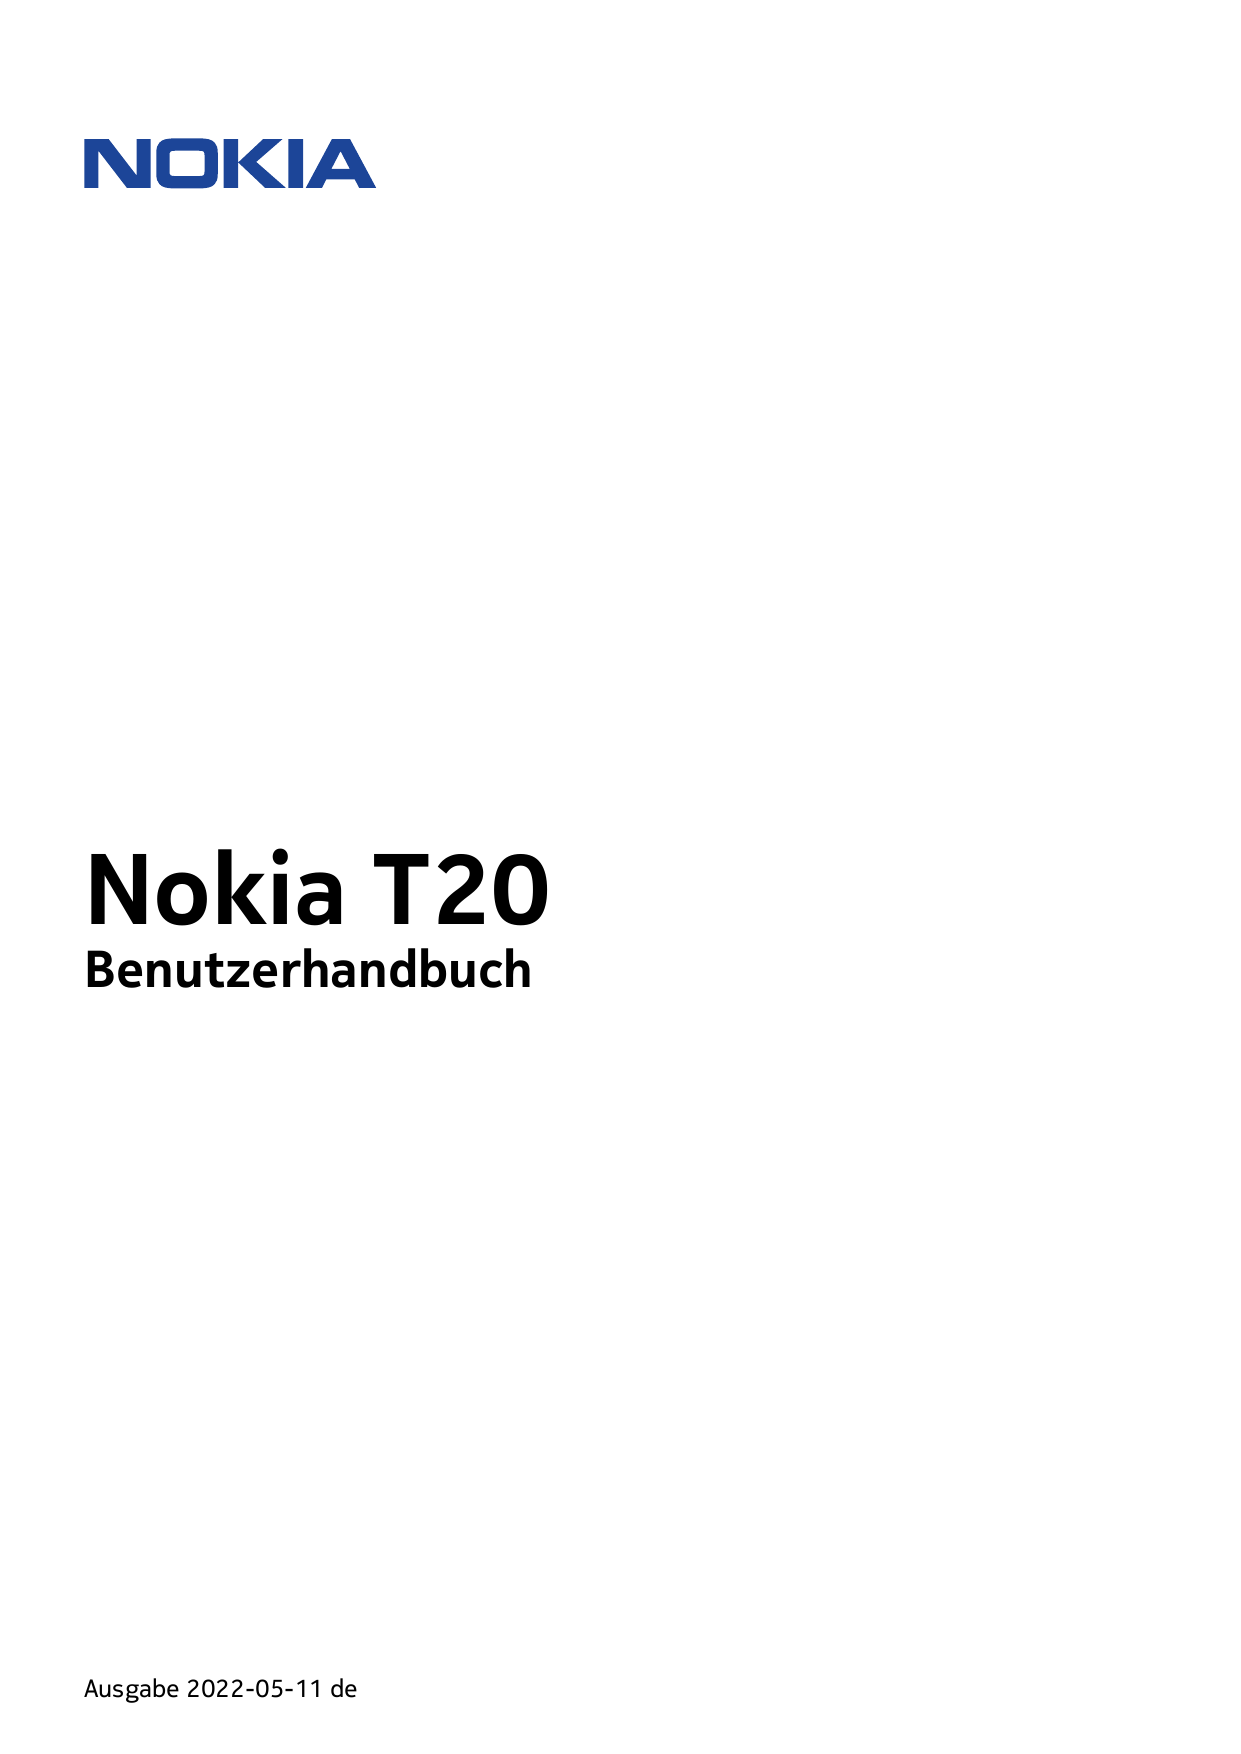 Nokia T20BenutzerhandbuchAusgabe 2022-05-11 de